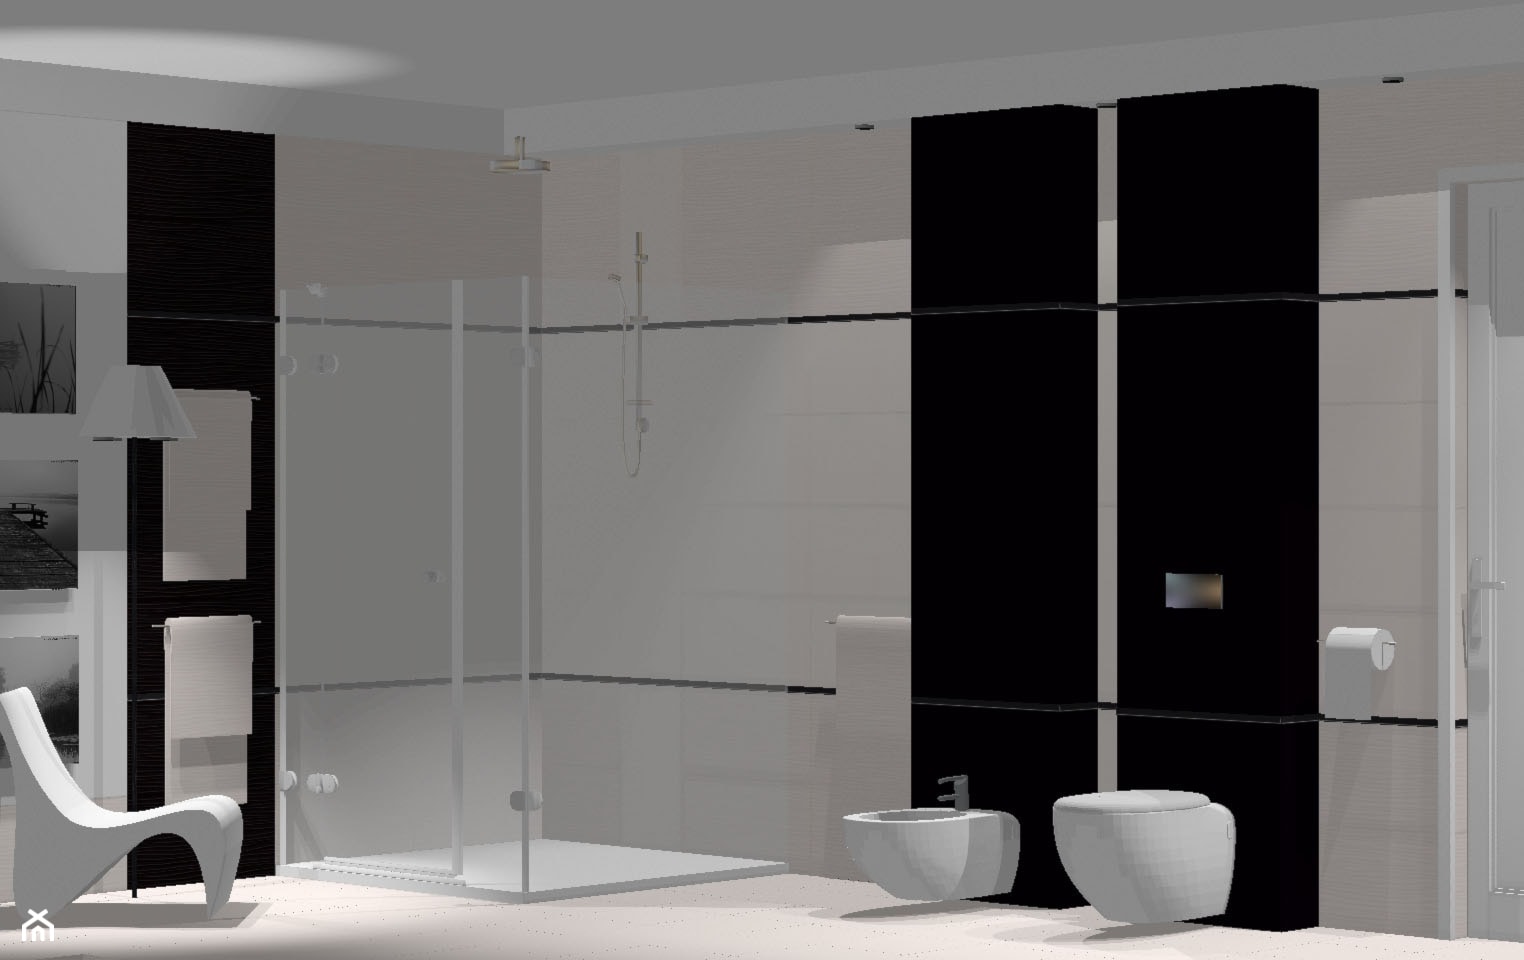 Przestrzenna nowoczesna łazienka: prysznic, bidet, wc - zdjęcie od domolka.pl - Homebook